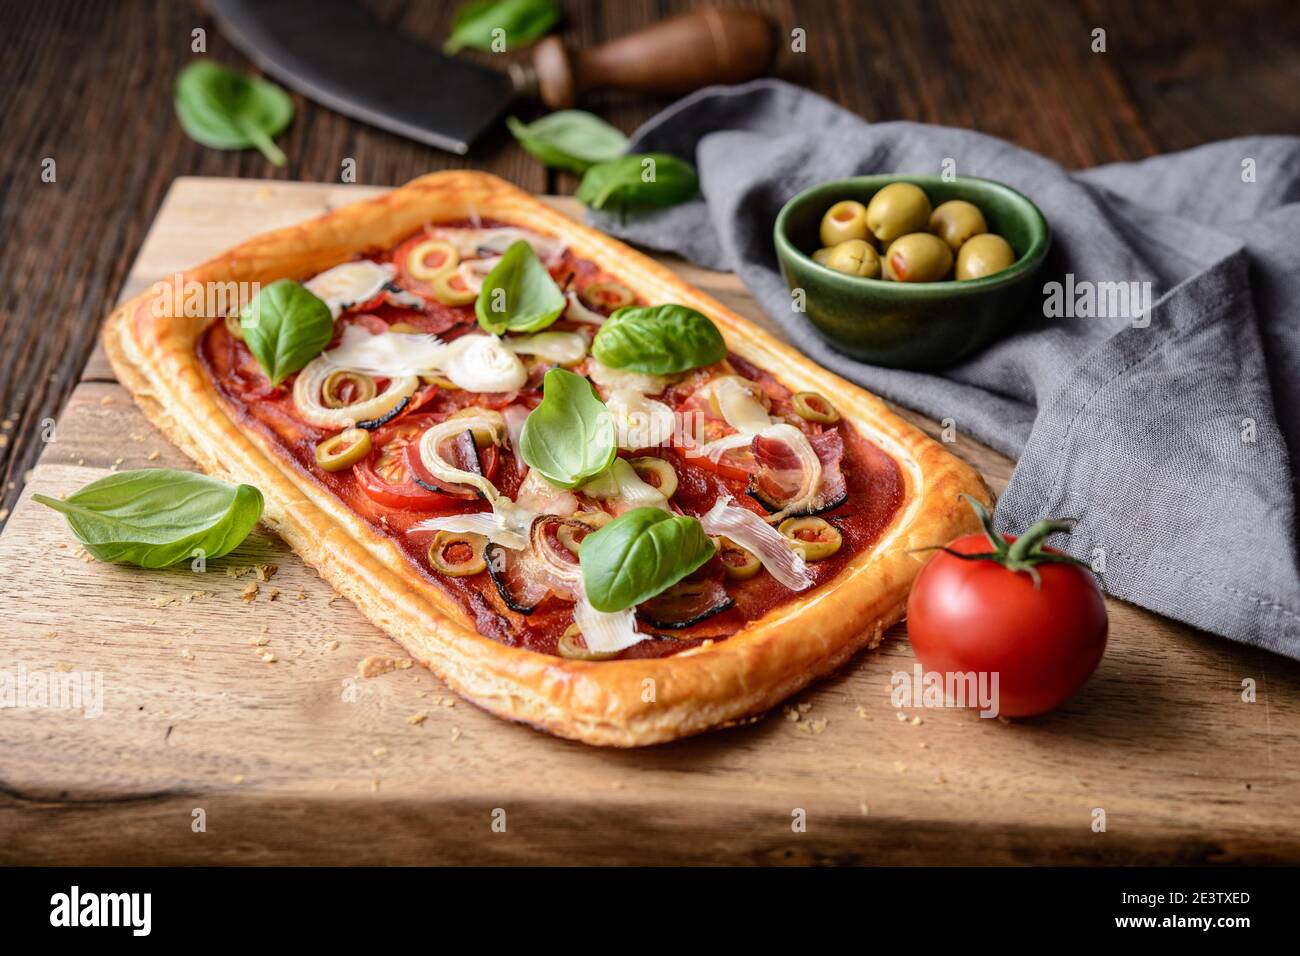 Pizza feuilletée maison avec tranches de bacon, tomates, olives vertes, fromage et oignons, recouvertes de feuilles de basilic sur fond rustique en bois Banque D'Images